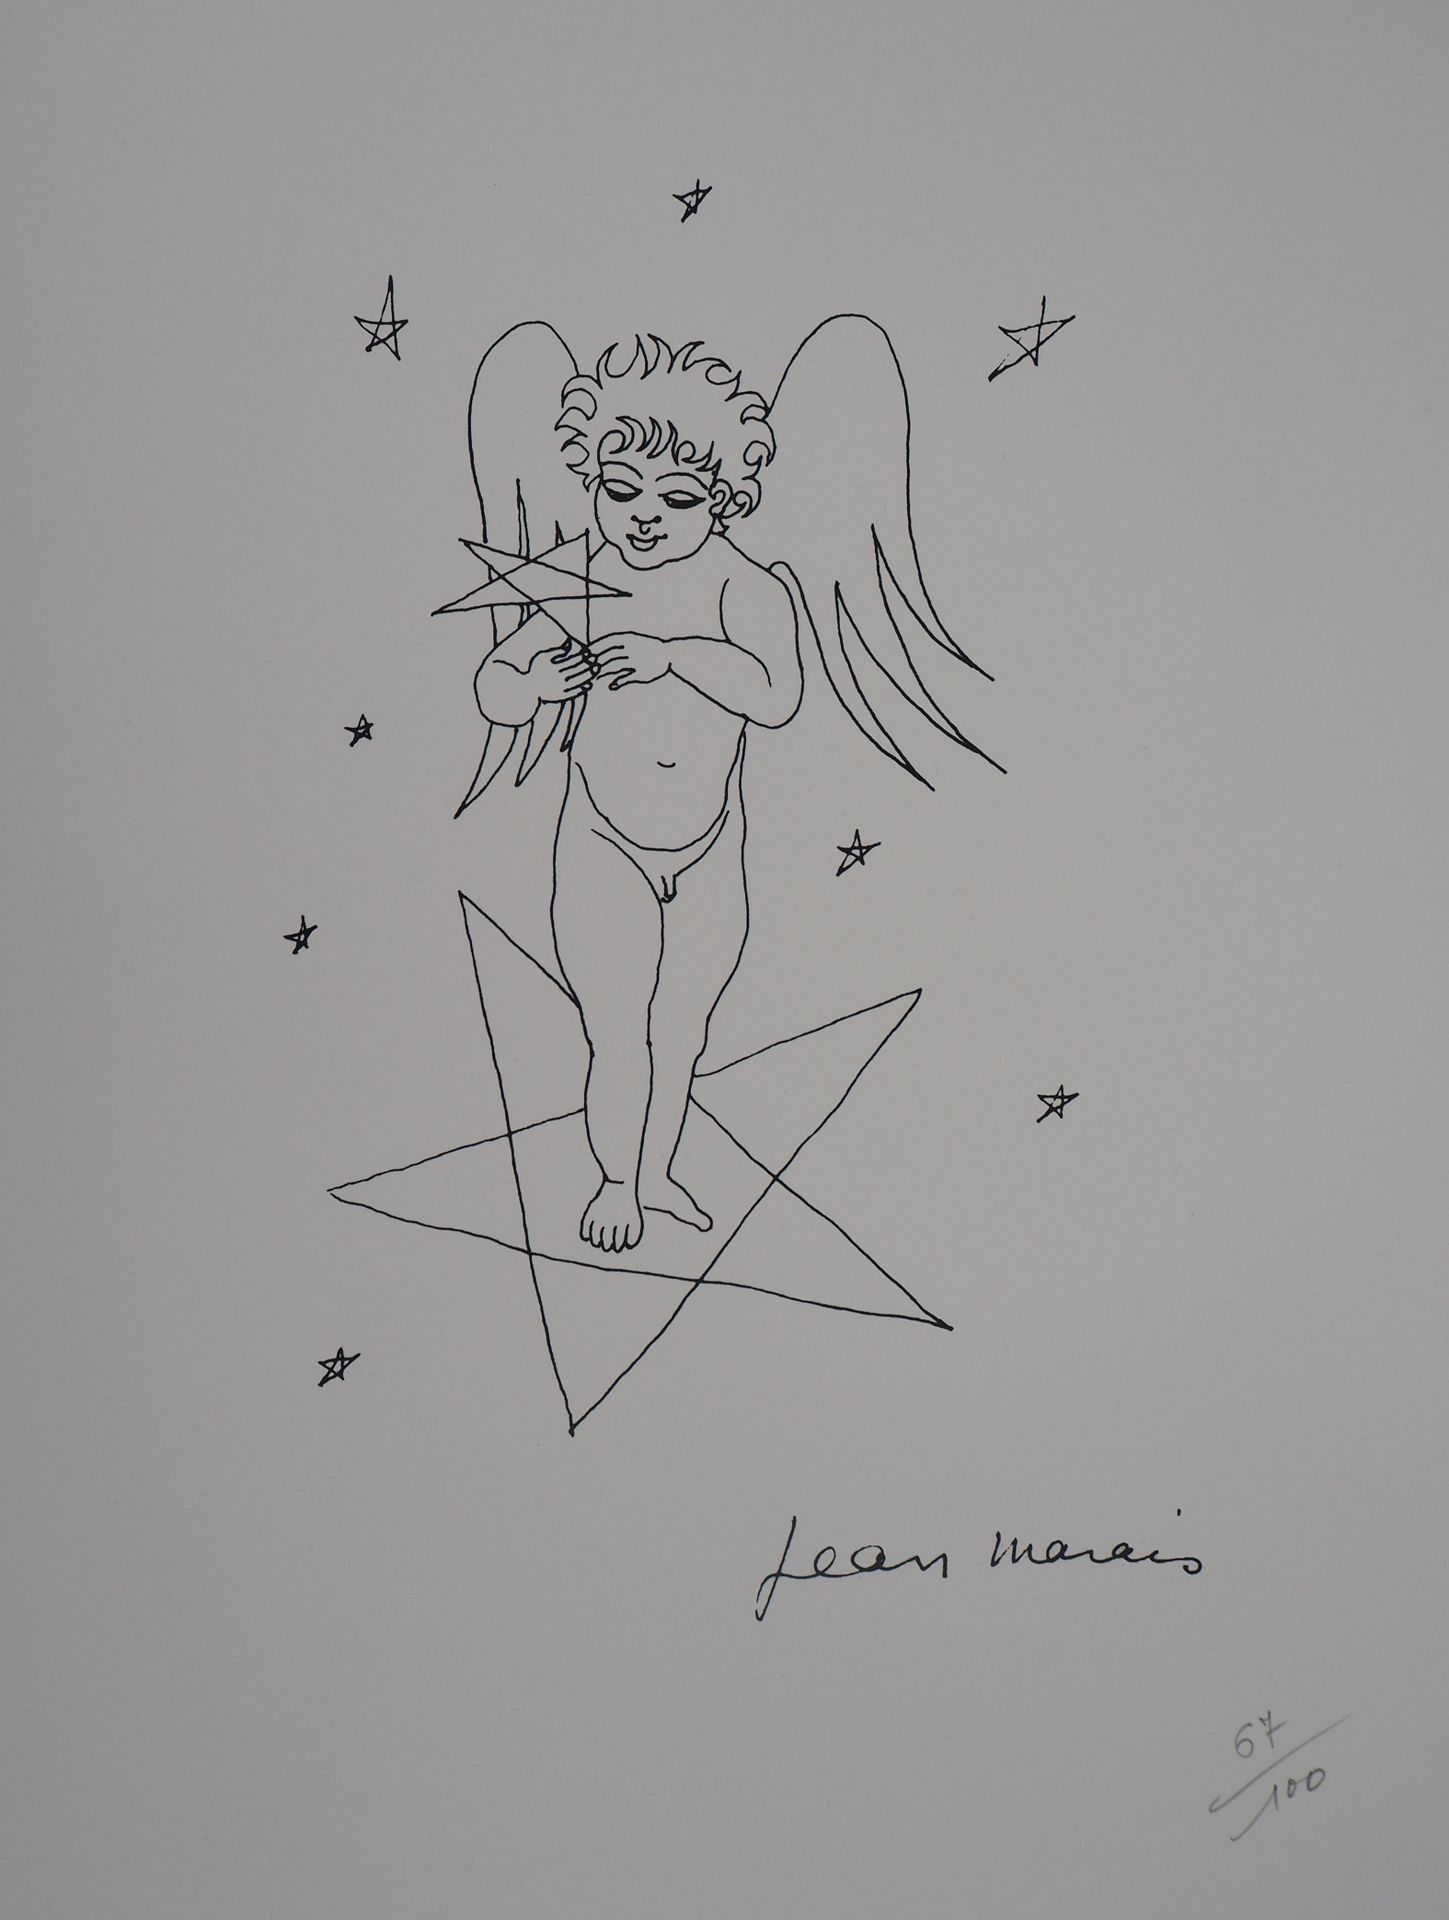 Jean MARAIS Jean MARAIS (1913 - 1998)

Der Engel mit dem Stern

Lithographie auf&hellip;